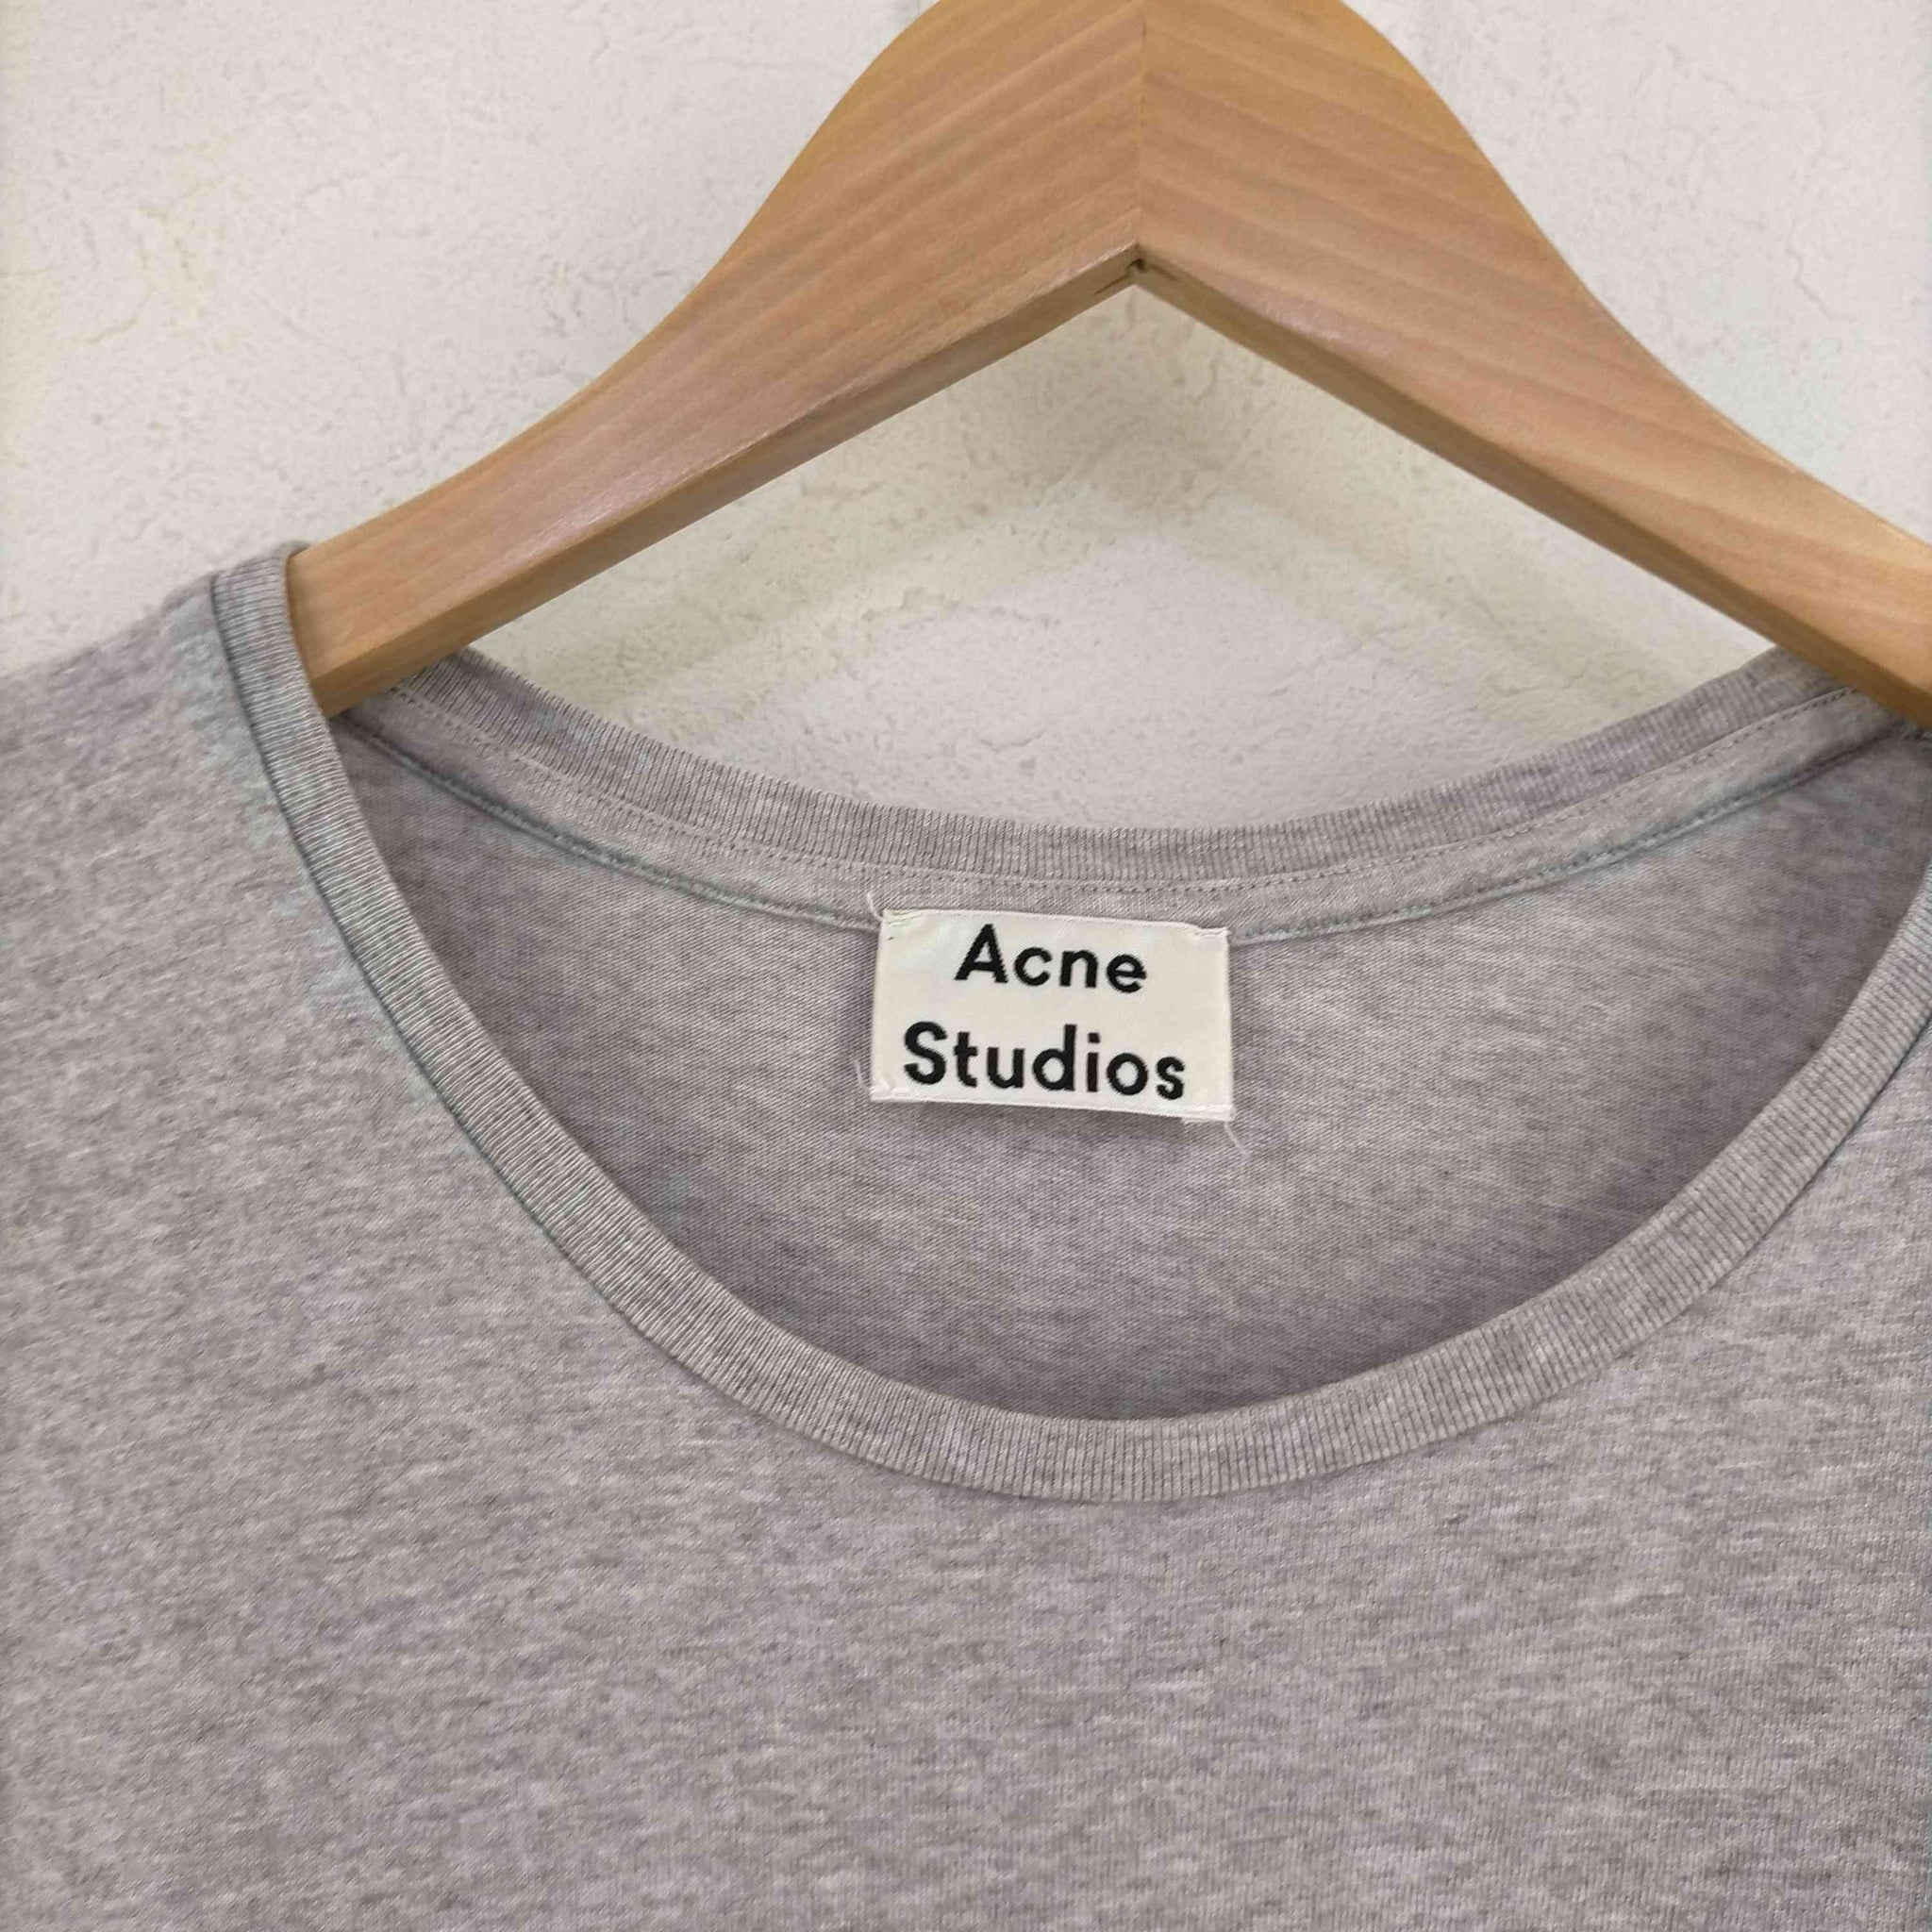 ACNE STUDIOS(アクネストゥディオズ)I WANT MORE STANDARD PHOTO Tシャツ